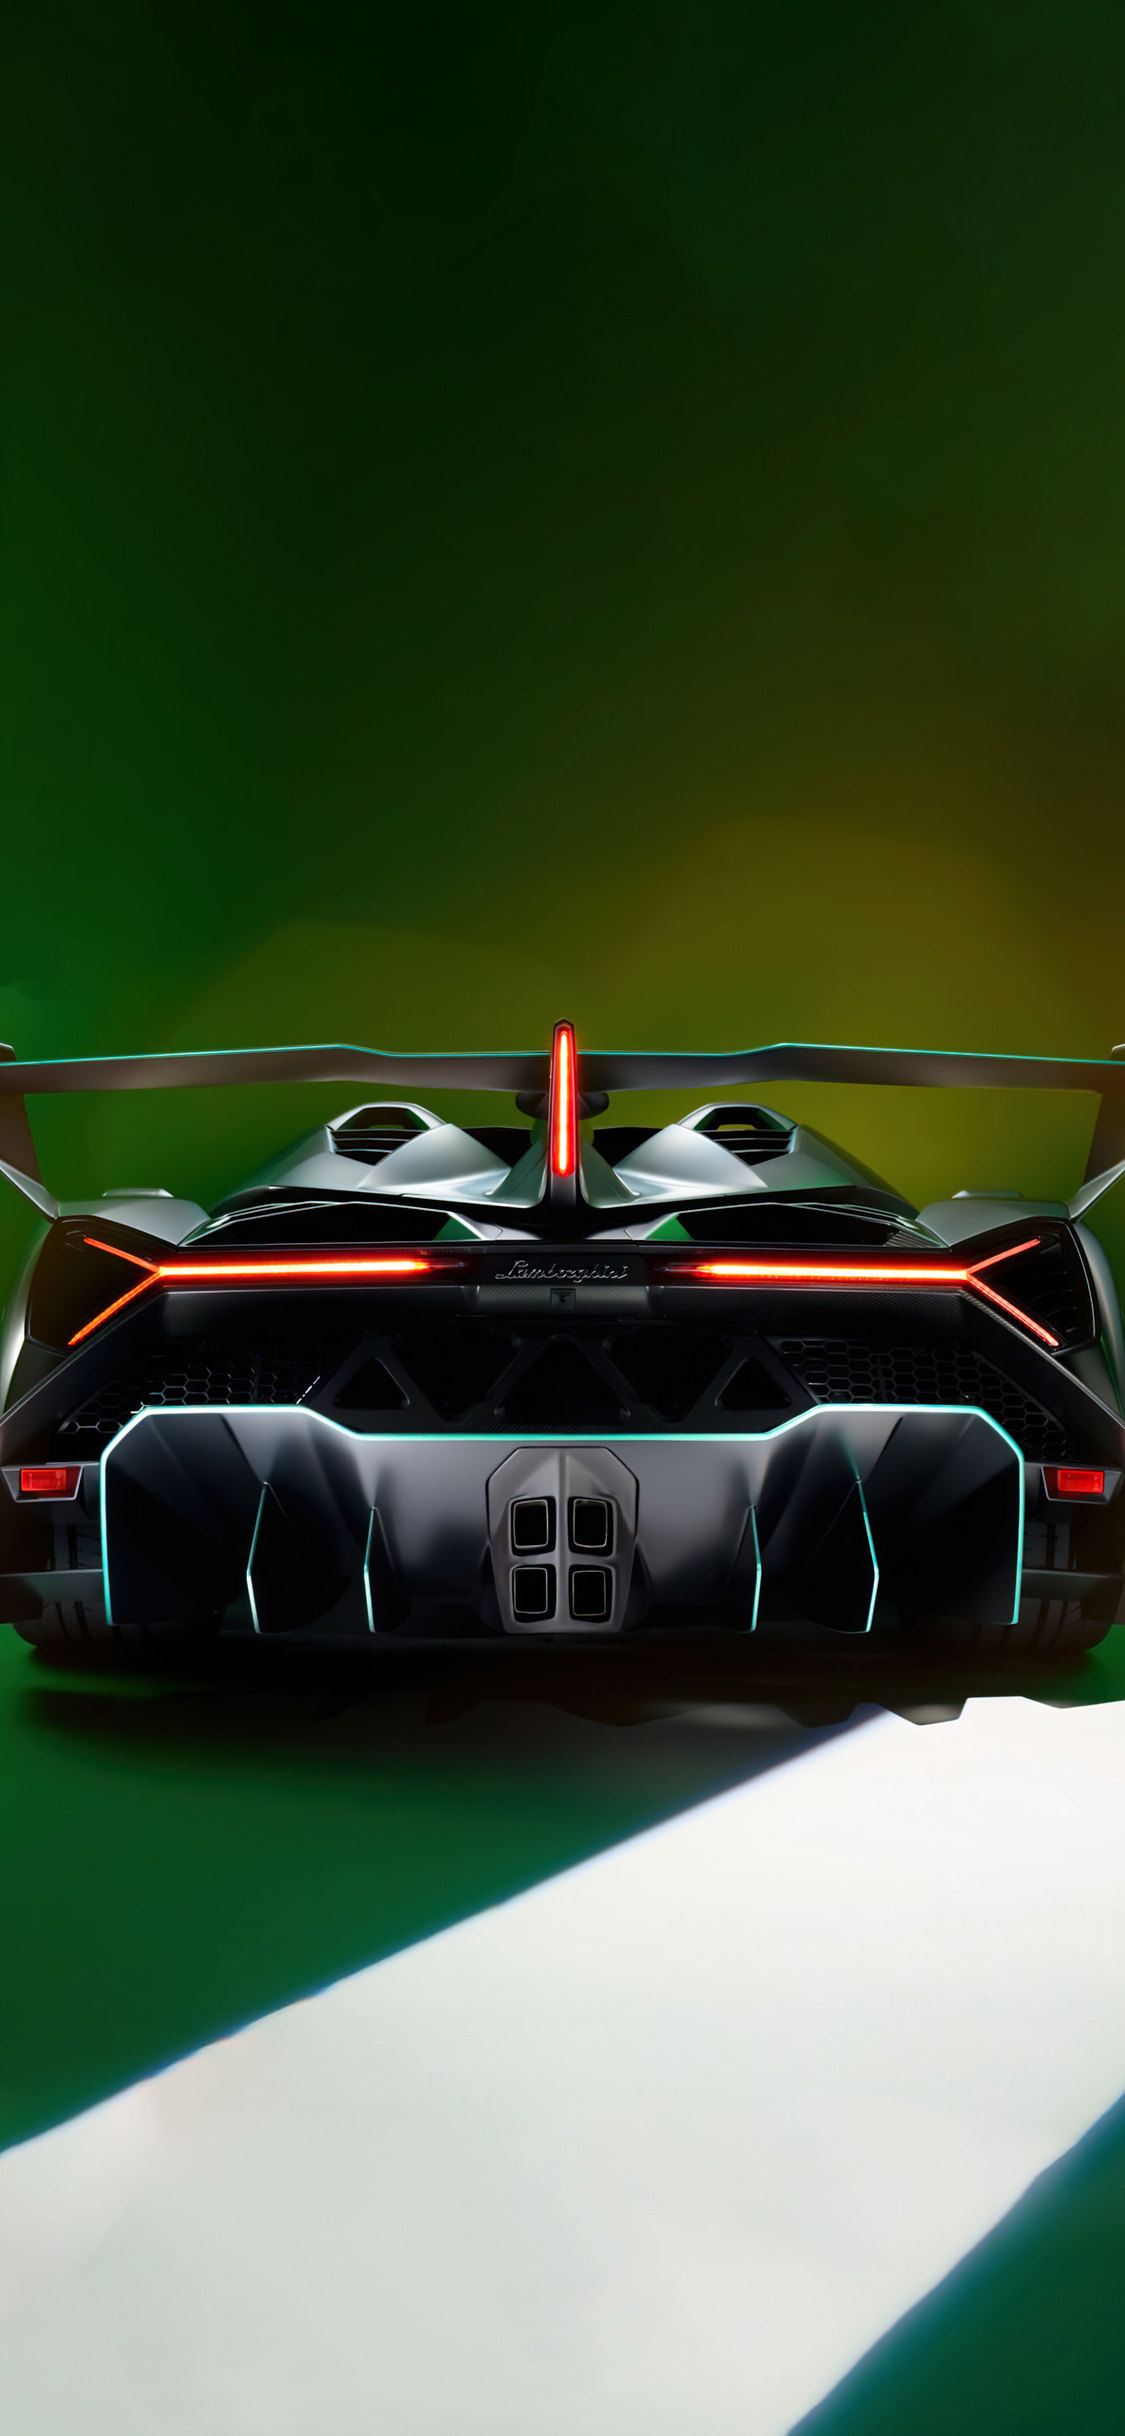 Lamborghini Veneno, Roadster version, 2021 model, iPhone wallpapers, 1130x2440 HD Phone